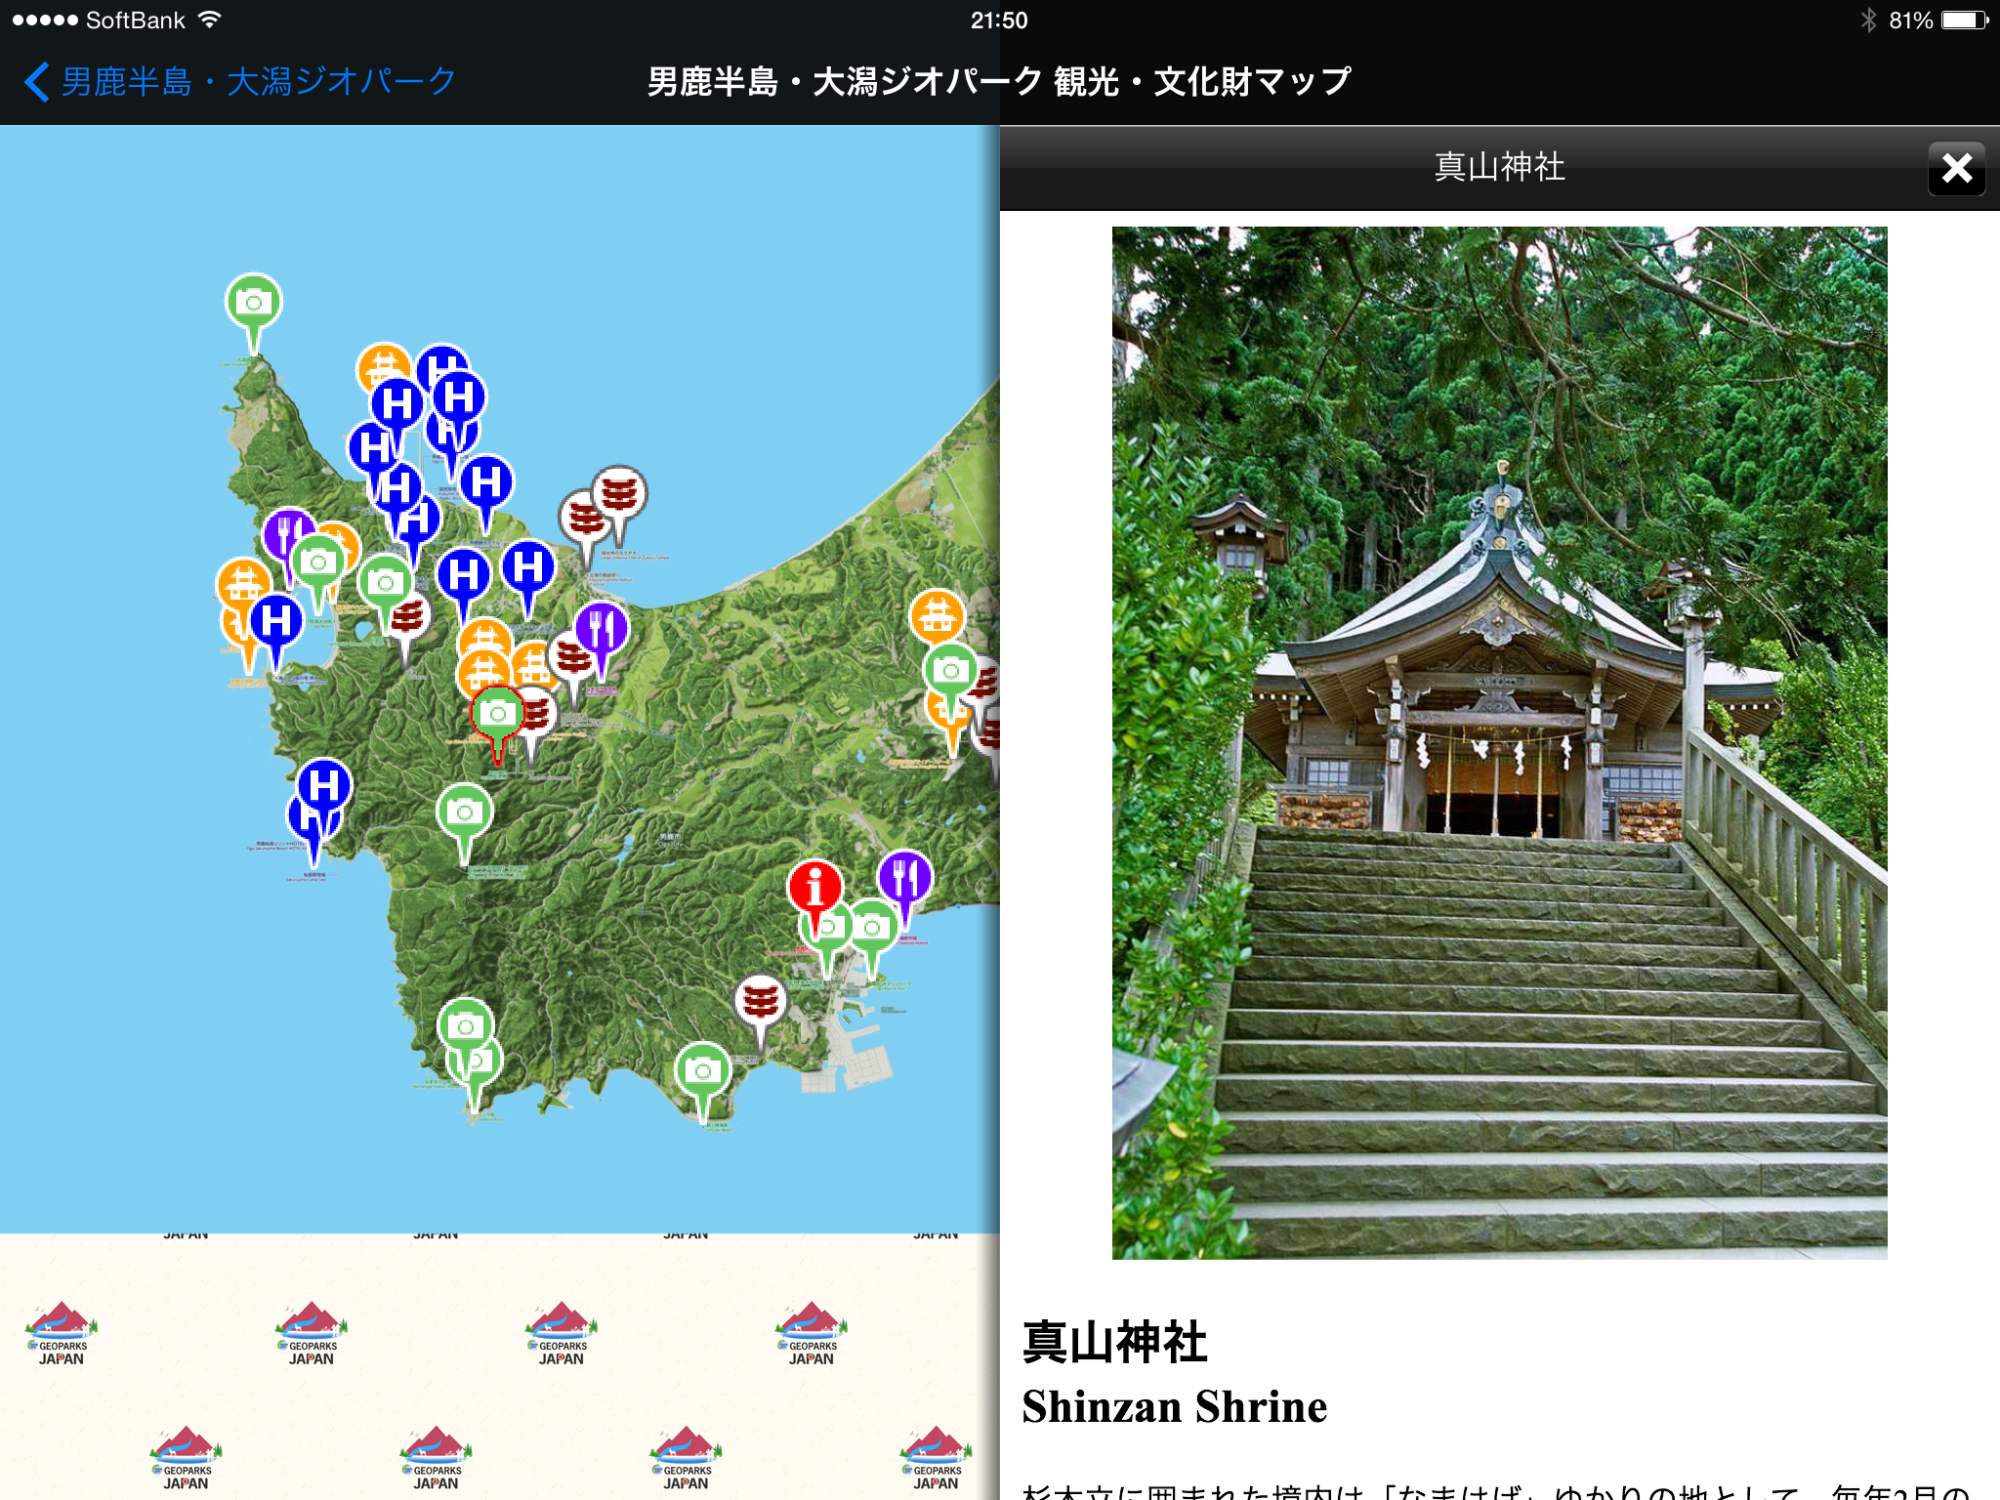 地図上の観光スポットの表示画面と真山神社の説明が表示されたアプリ画面